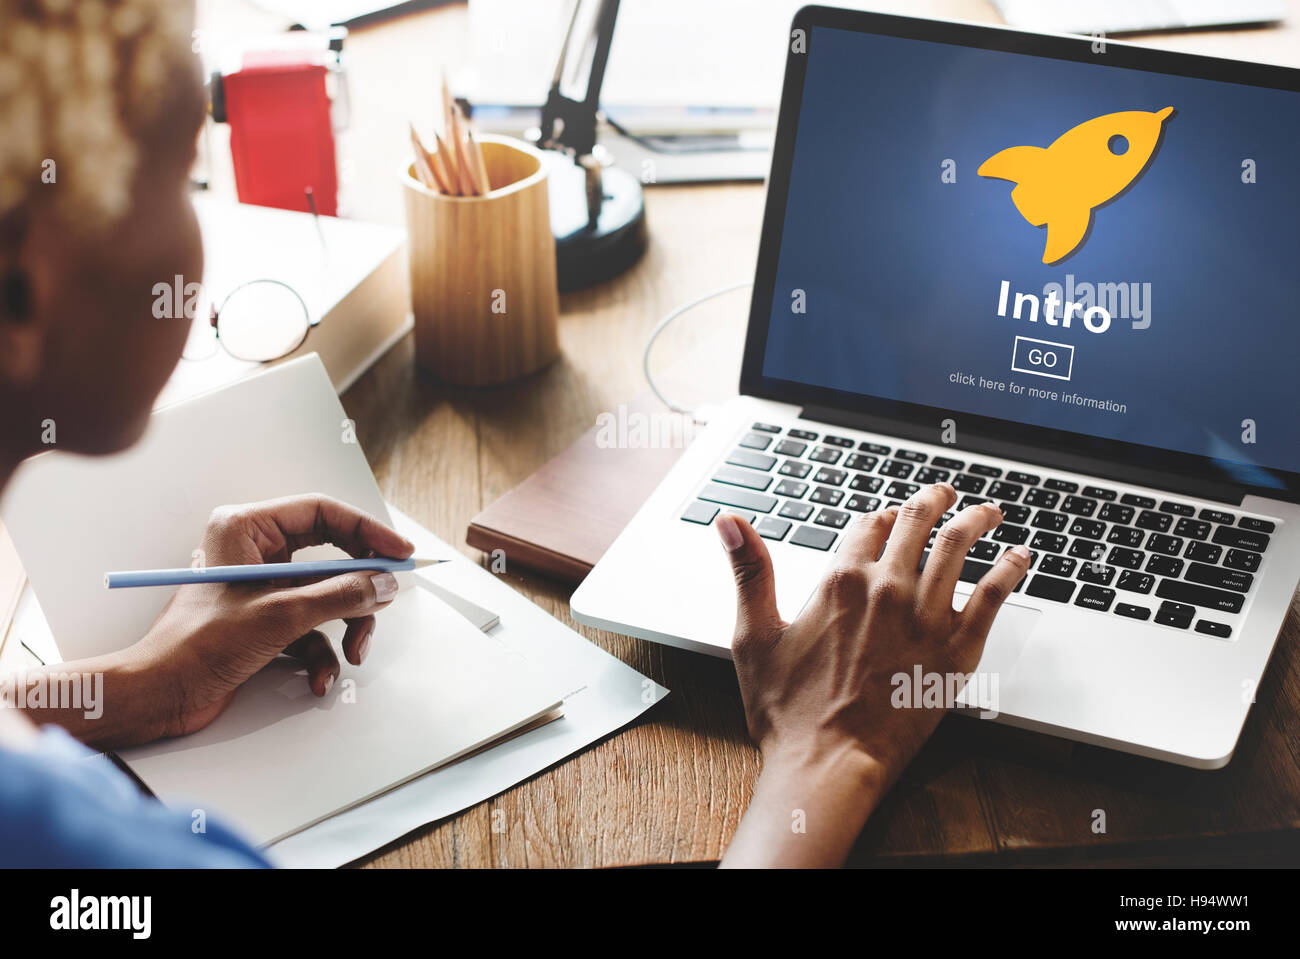 Intro starten Start schaffen Innovation Web Online-Konzept Stockfoto